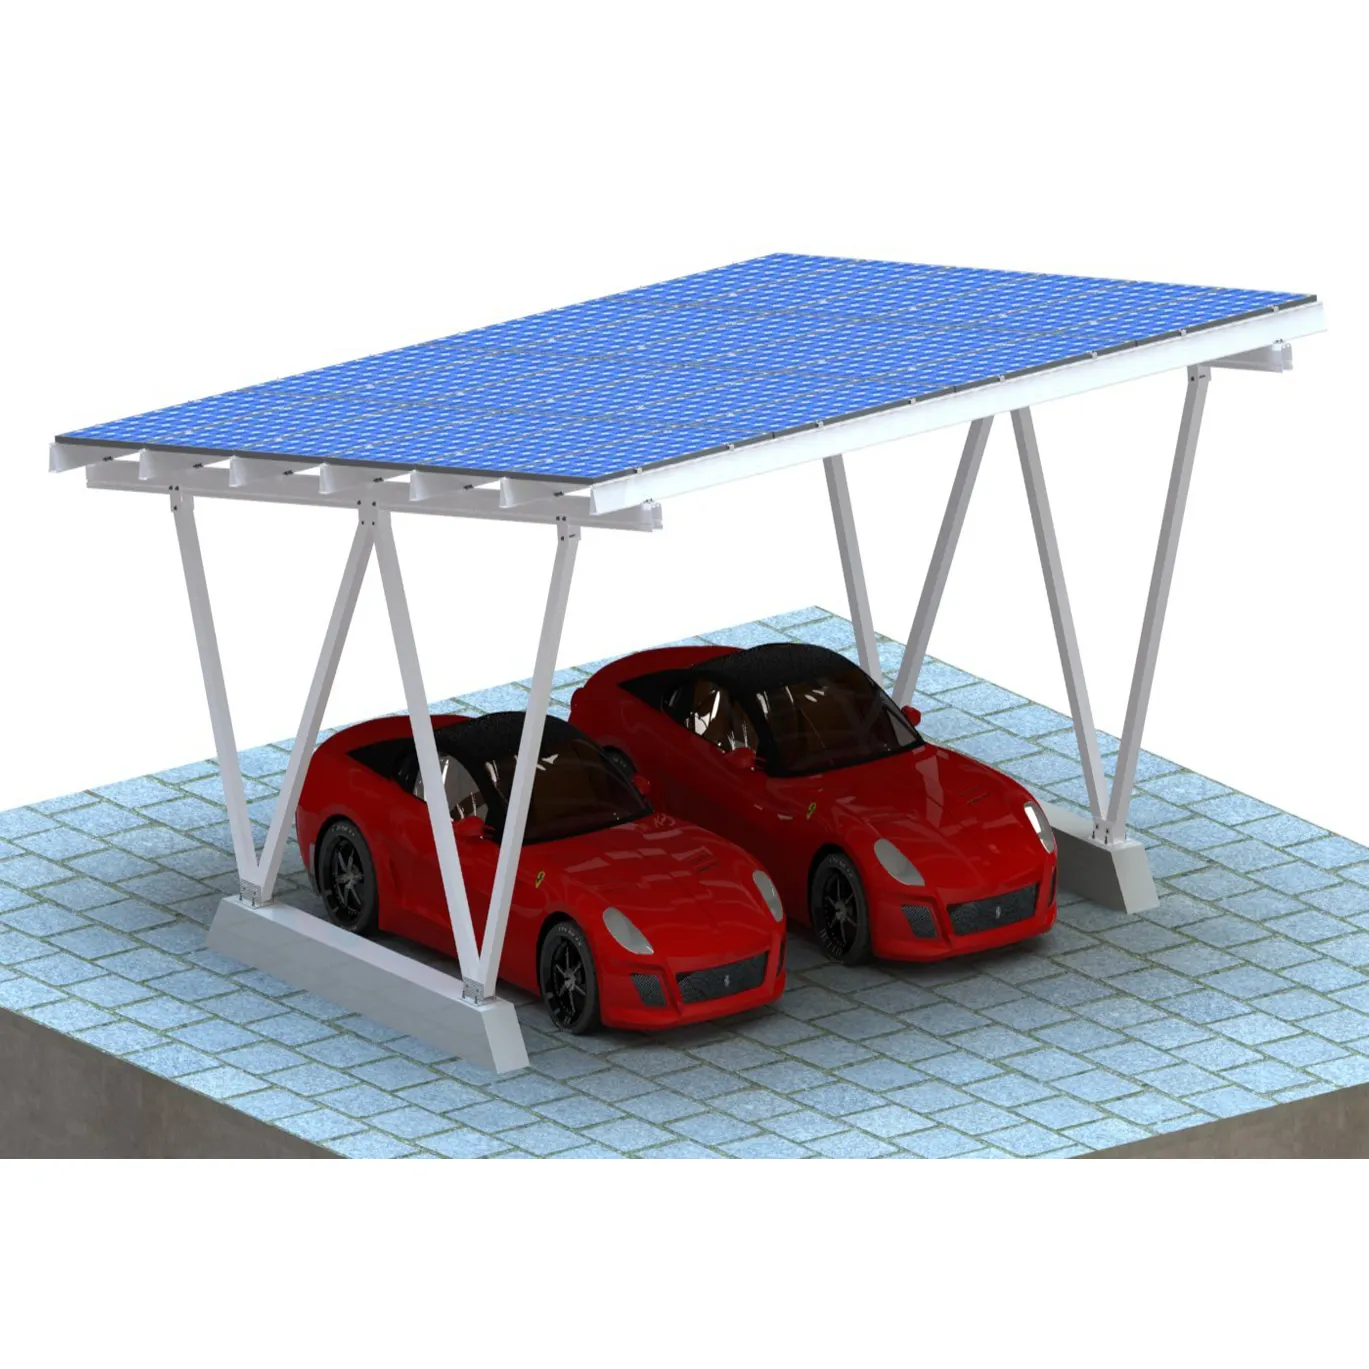 Solar Carport Solar Montages ystem Park regals truktur Kanal Solar Carport Solar Park wagens ystem